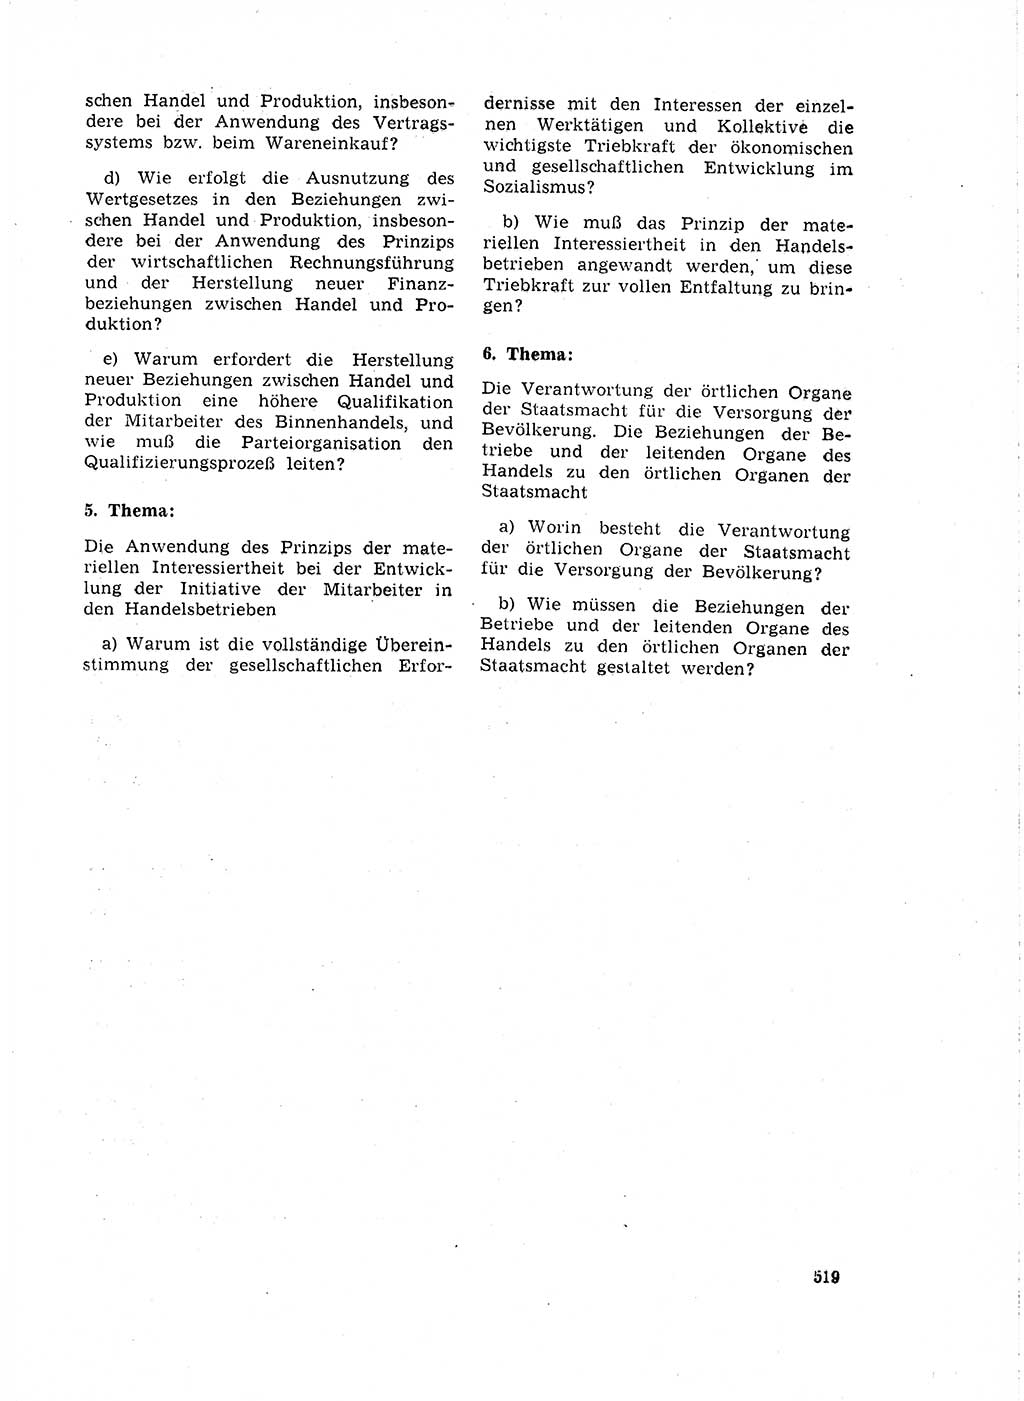 Neuer Weg (NW), Organ des Zentralkomitees (ZK) der SED (Sozialistische Einheitspartei Deutschlands) für Fragen des Parteilebens, 18. Jahrgang [Deutsche Demokratische Republik (DDR)] 1963, Seite 519 (NW ZK SED DDR 1963, S. 519)